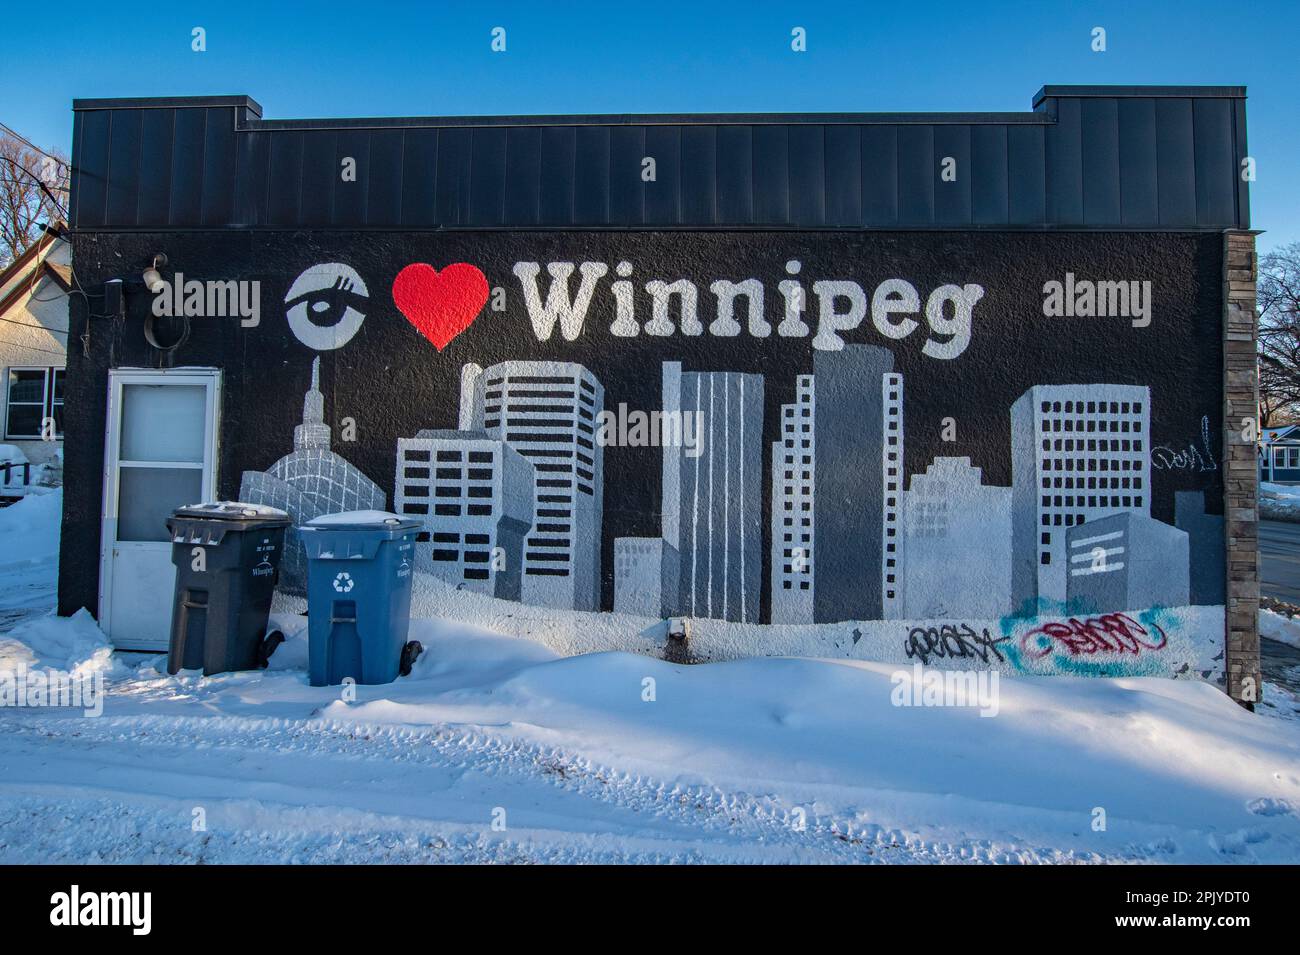 J'adore la fresque de Winnipeg, au Manitoba, au Canada Banque D'Images